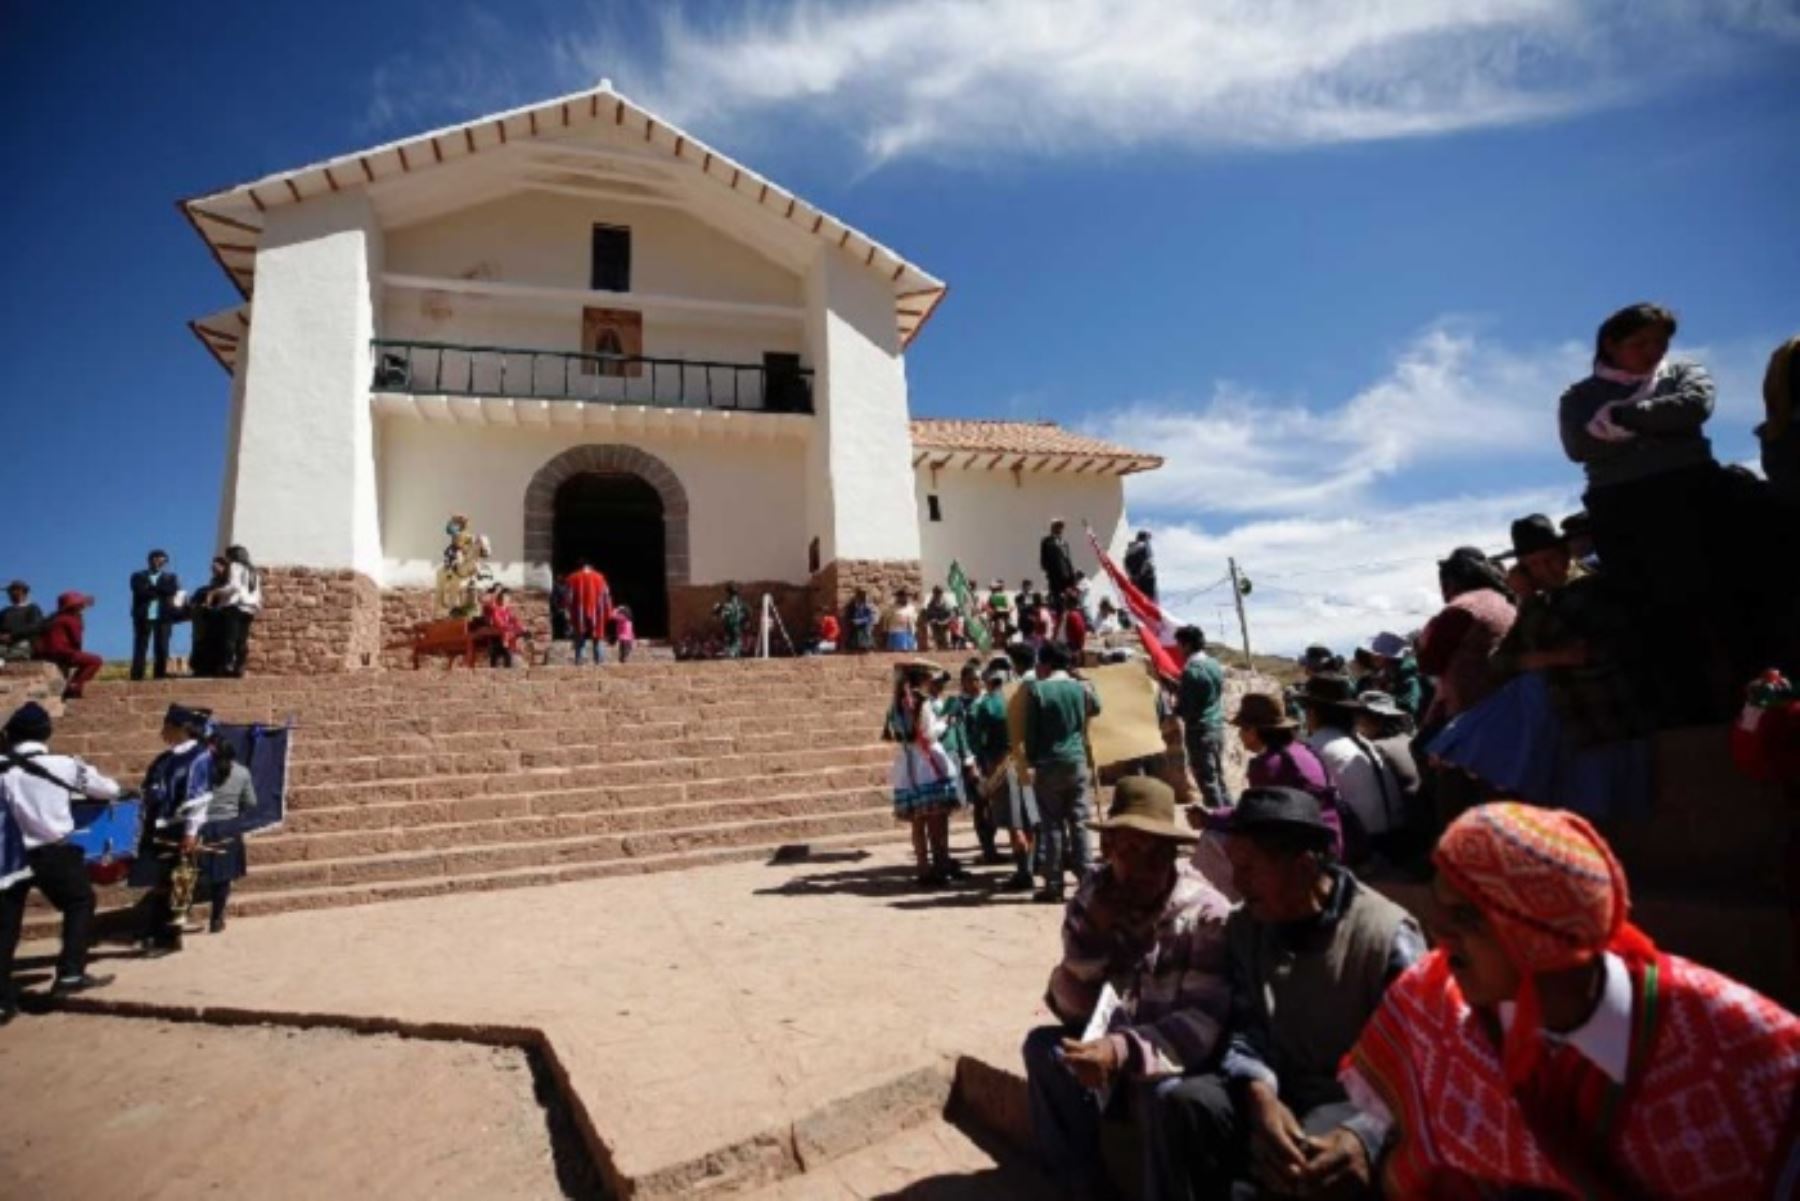 El Ministerio de Cultura y el Instituto de Conservación de Getty (GCI por sus siglas en inglés) de Estados Unidos reinauguraron hoy la iglesia Santiago Apóstol de Kuñotambo, una edificación del siglo XVII ubicada en la comunidad campesina de Kuñotambo, distrito de Rondocan, provincia de Acomayo, región Cusco.